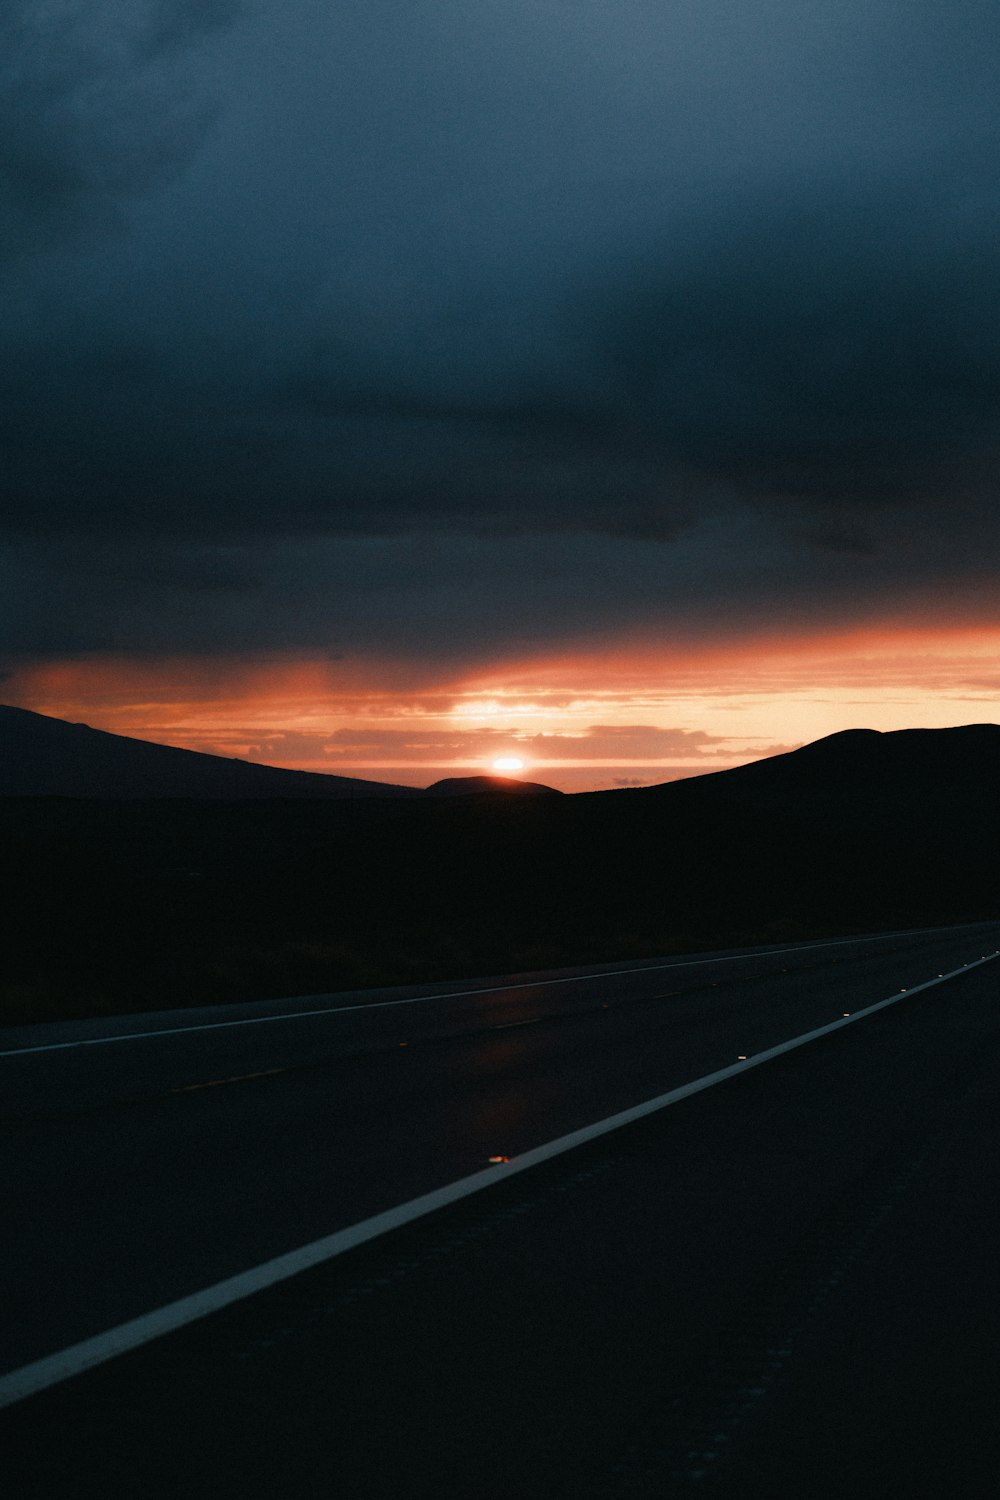 black asphalt road during sunset